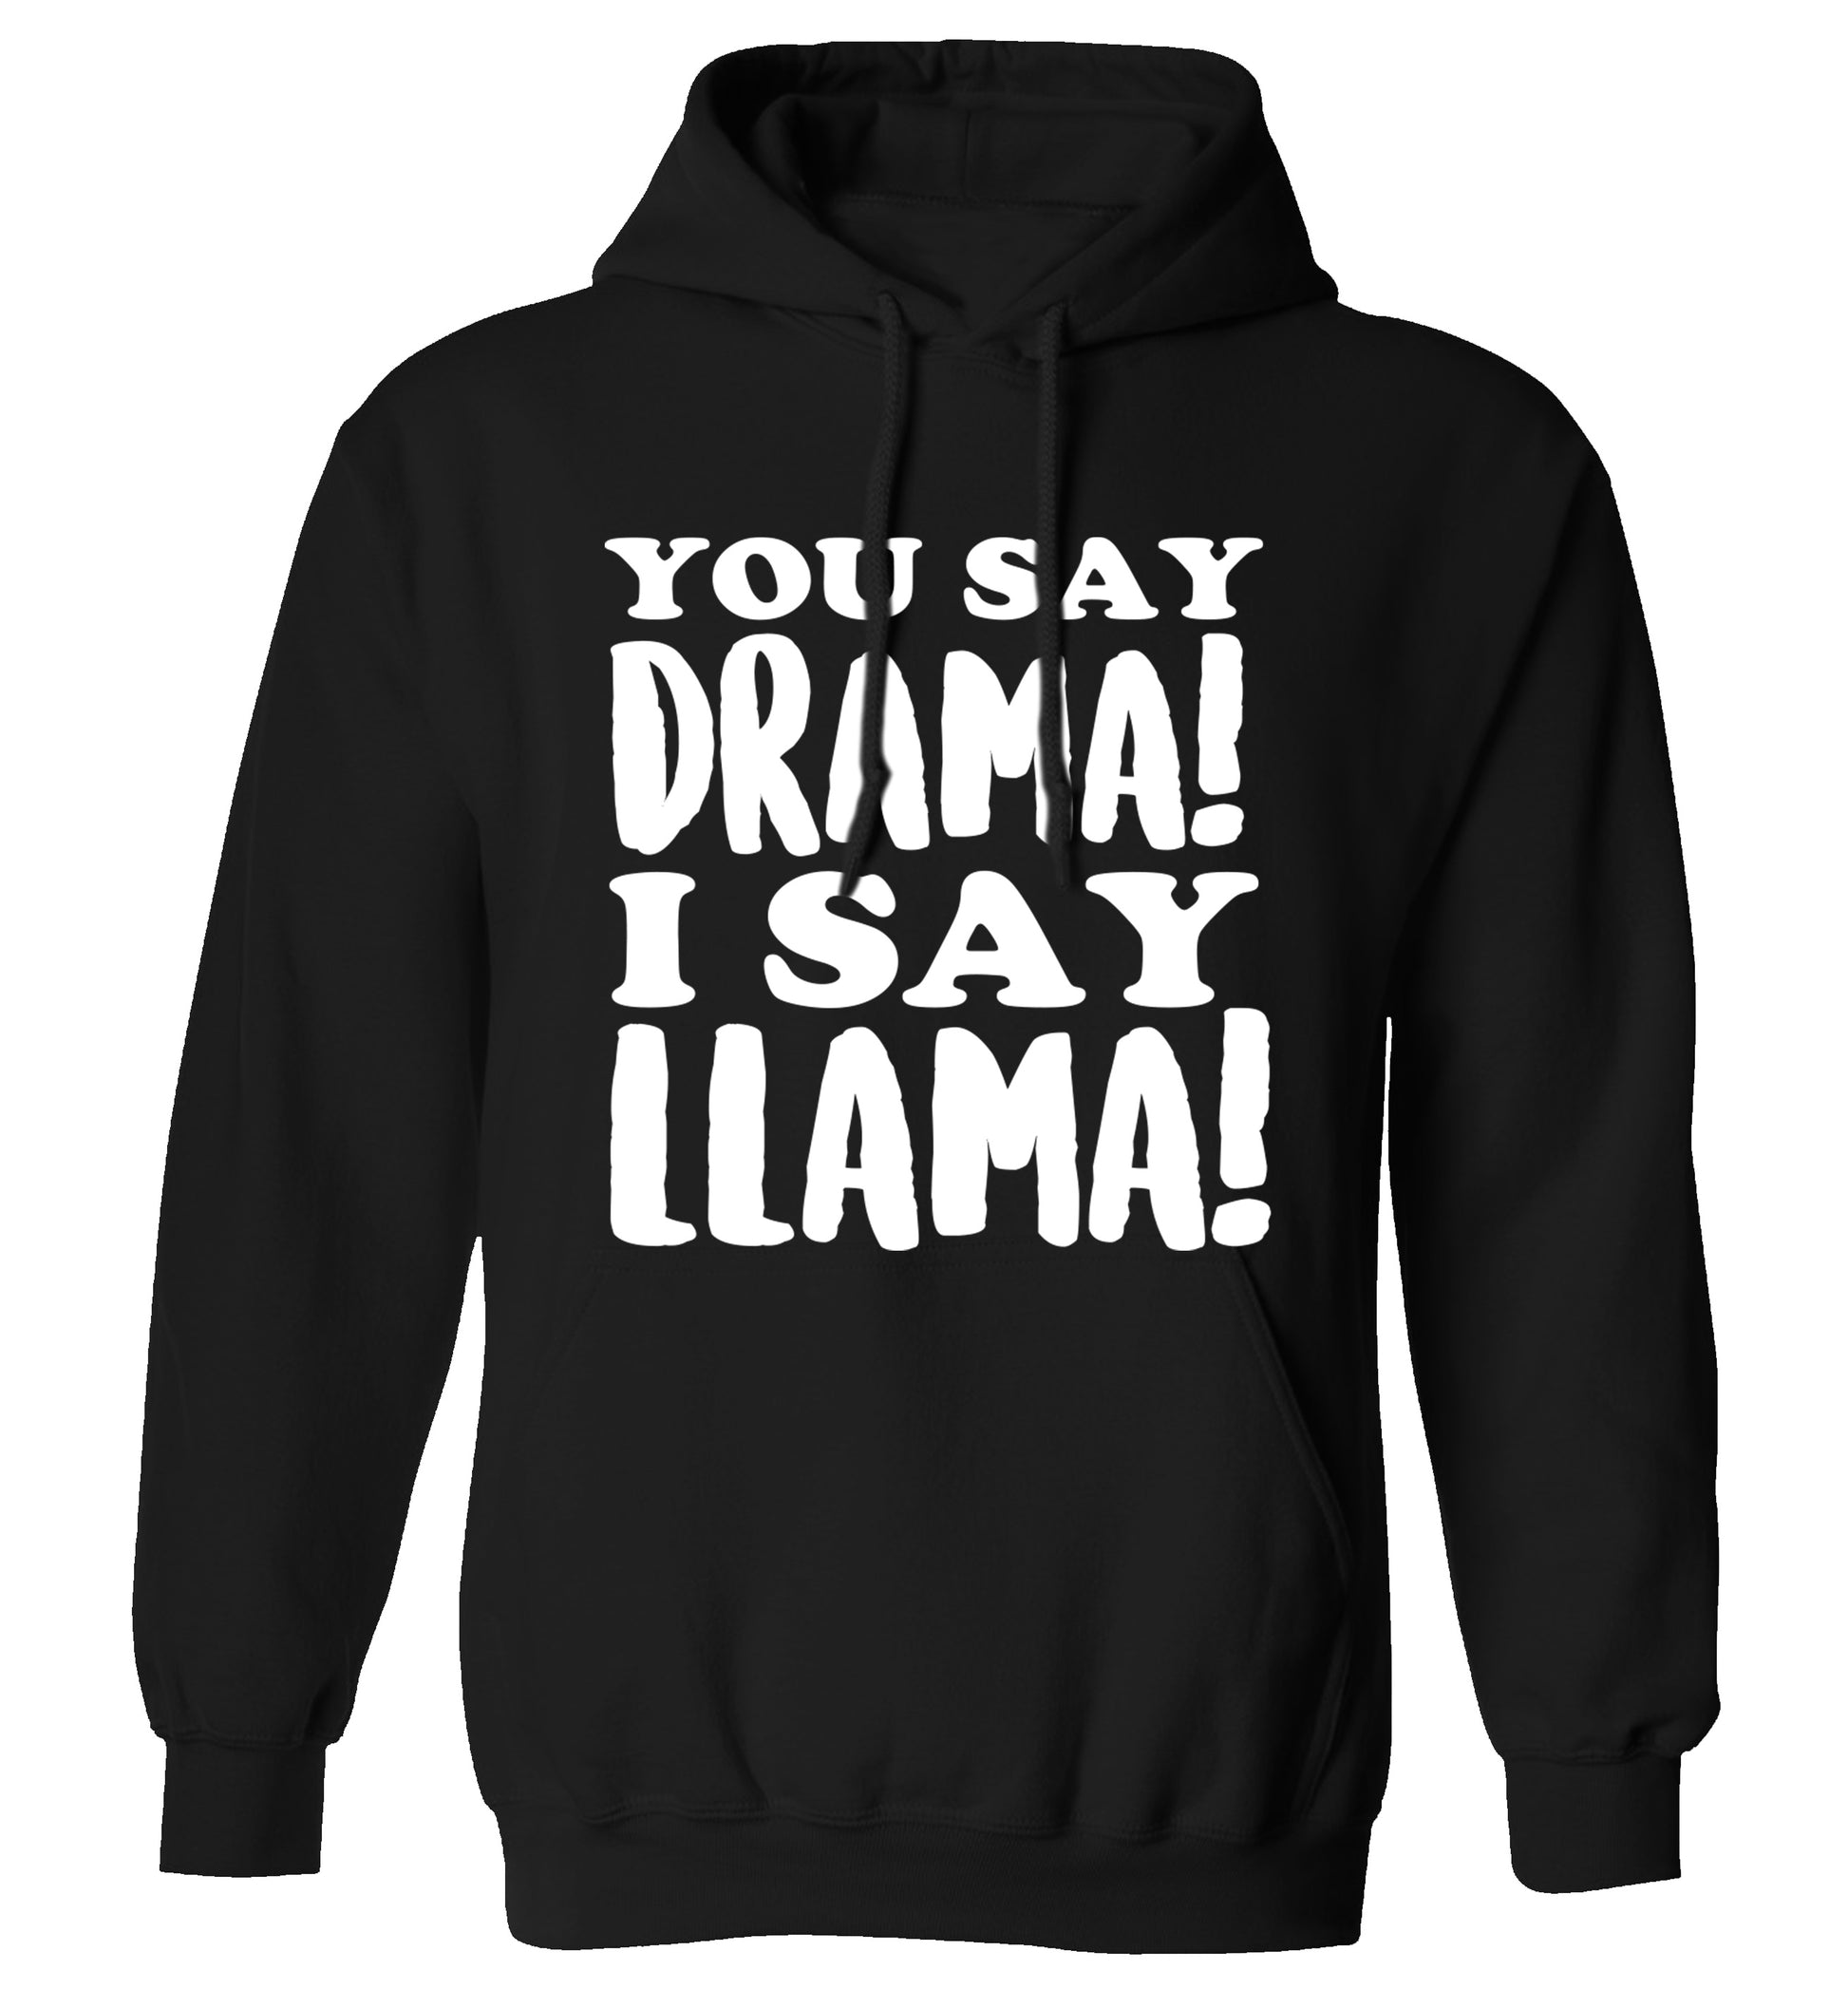 You say drama I say llama! adults unisex black hoodie 2XL